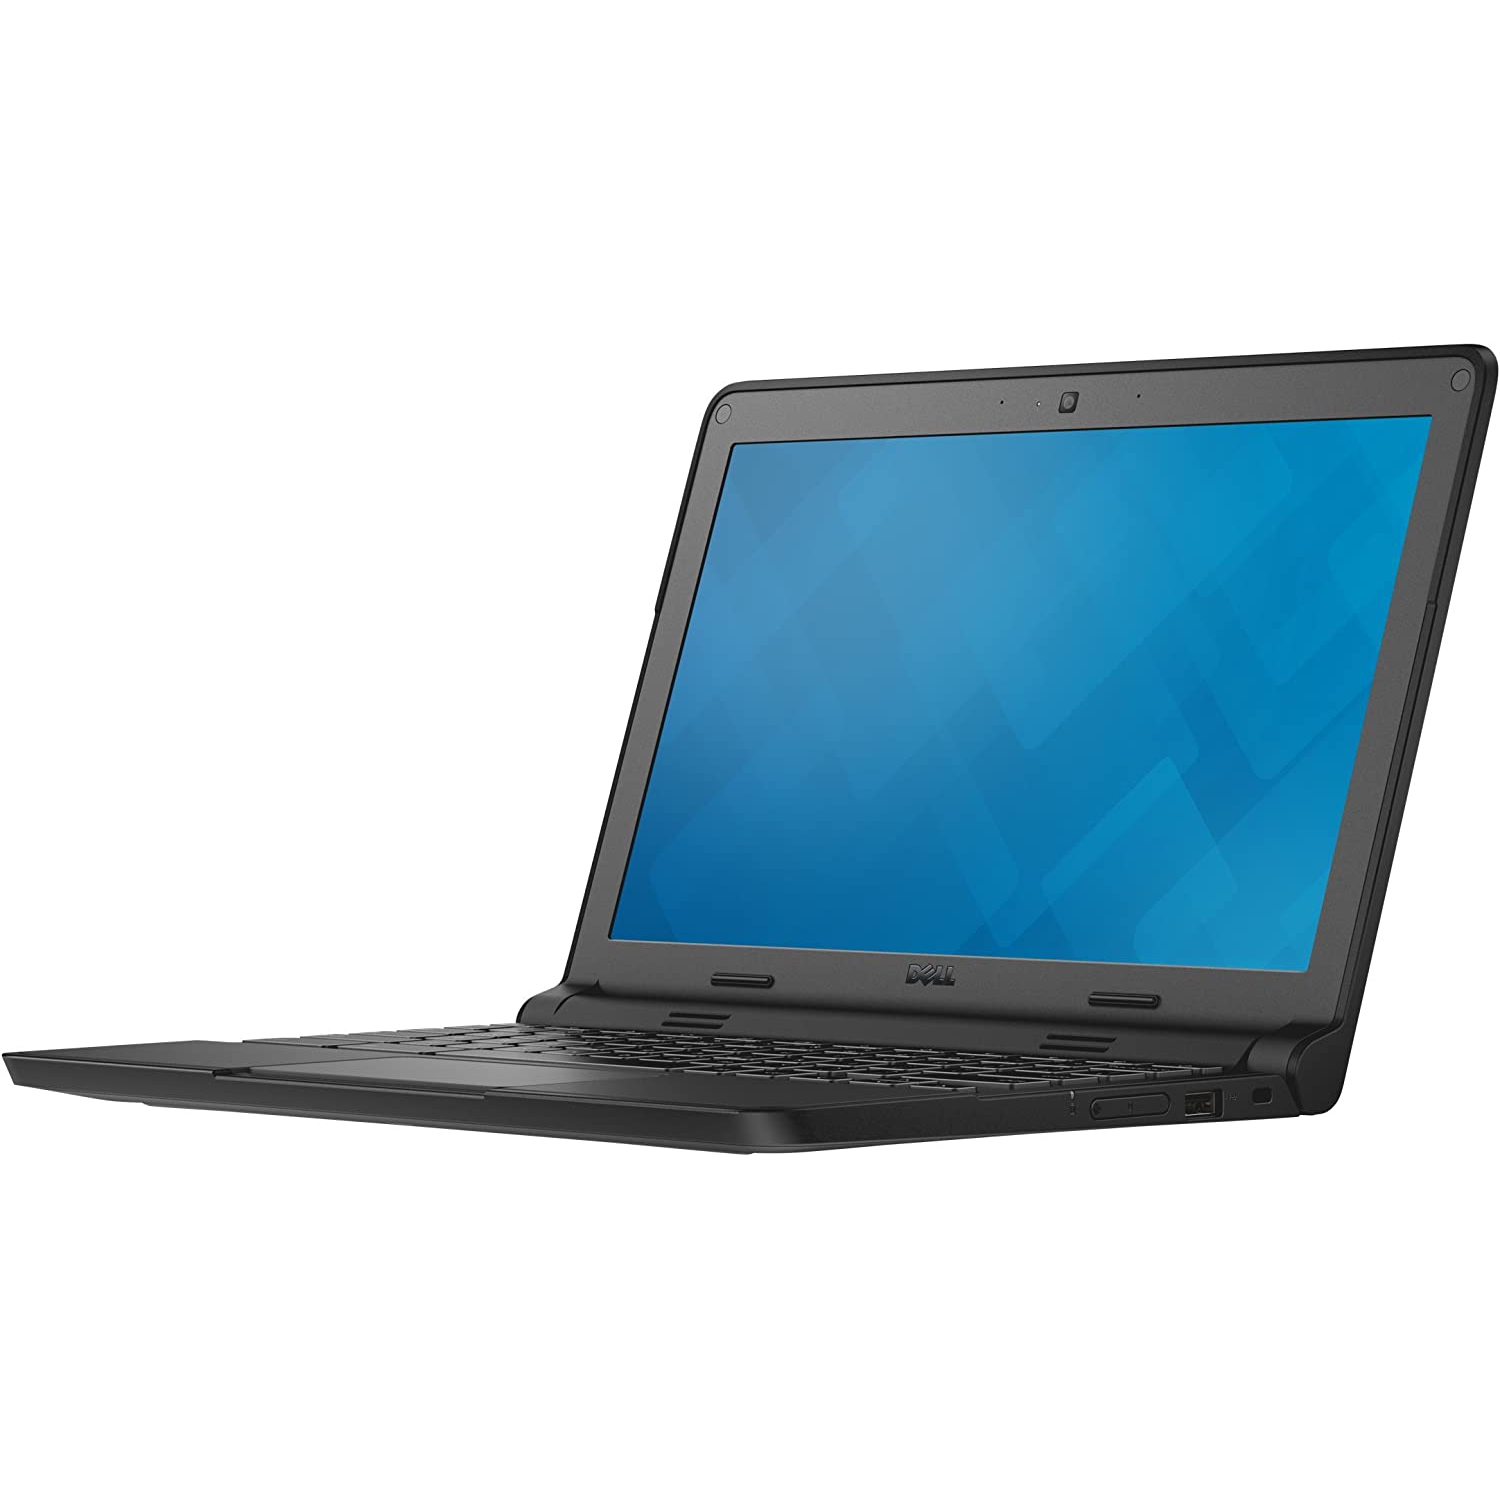 Refurbished (Good) - Dell Chromebook 3120 XDGJH - CRM3120-333BLK (11.6", Intel Celeron N2840 2.16GHz, 4GB RAM, 16GB SSD, Chromebook OS) [Refurbished]